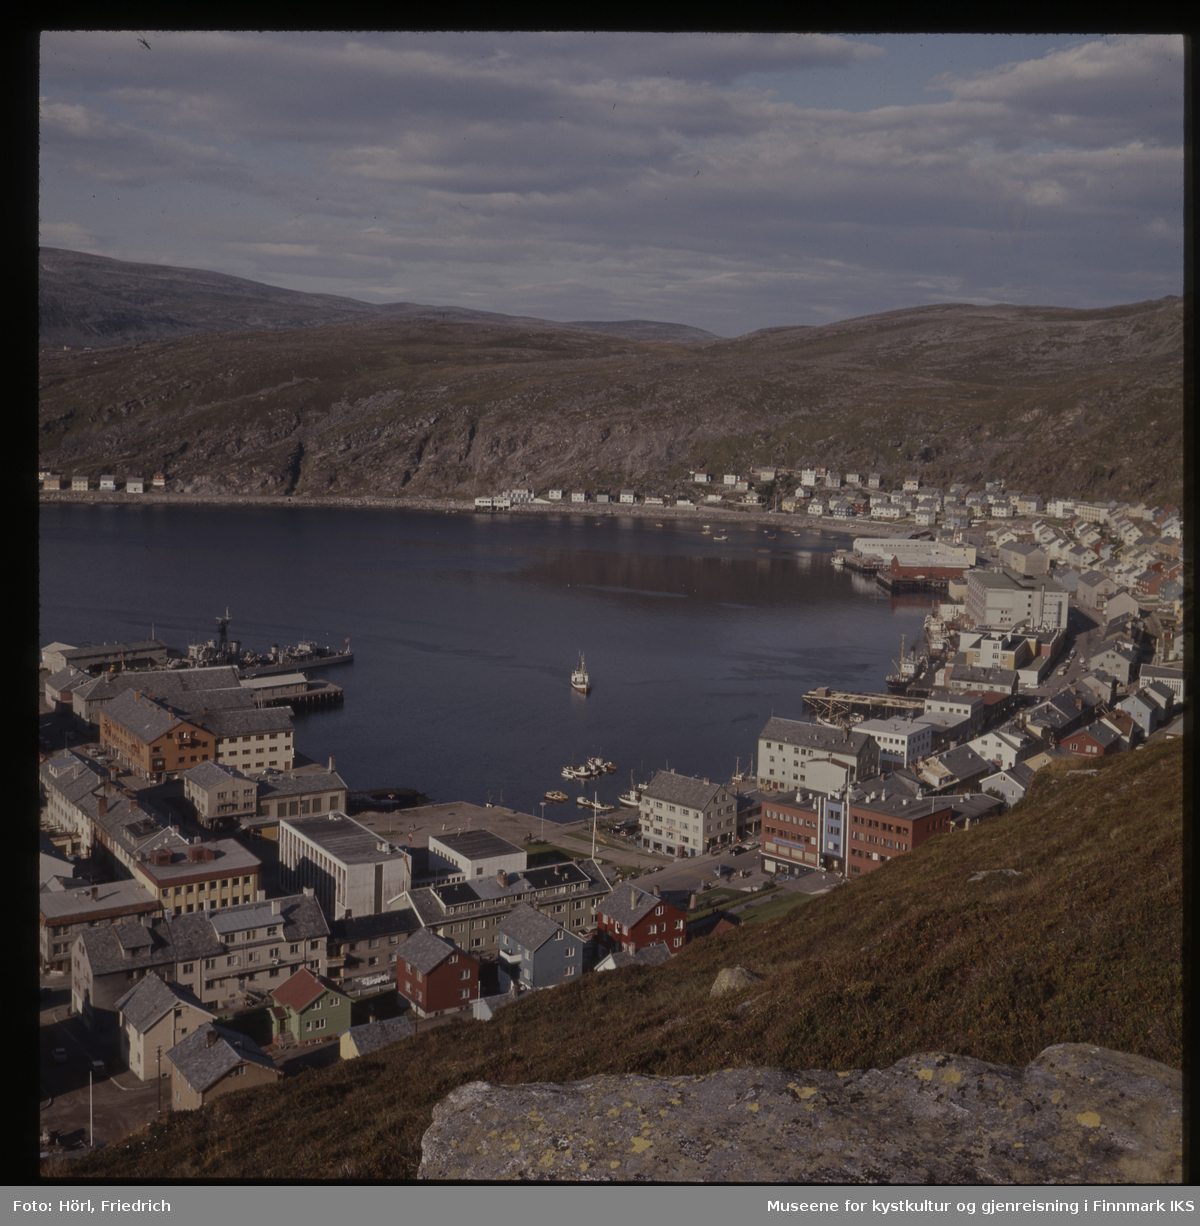 Det er sommer i Hammerfest og fra Salenfjellet ser man utover byens sentrum med rådhus, bankbygg og Findusfabrikken helt bort til Hauans materialandel ved munningen til Storelva og bydelen Molla bak den. Byen er gjenreist og fargerike hus med skifertak preger bybildet. I havna liger det ulike typer båter. Marinefartøyet på bildet er en norsk fregatt, mest sannsynlig KNM Tromsø eller KNM Haugesund.